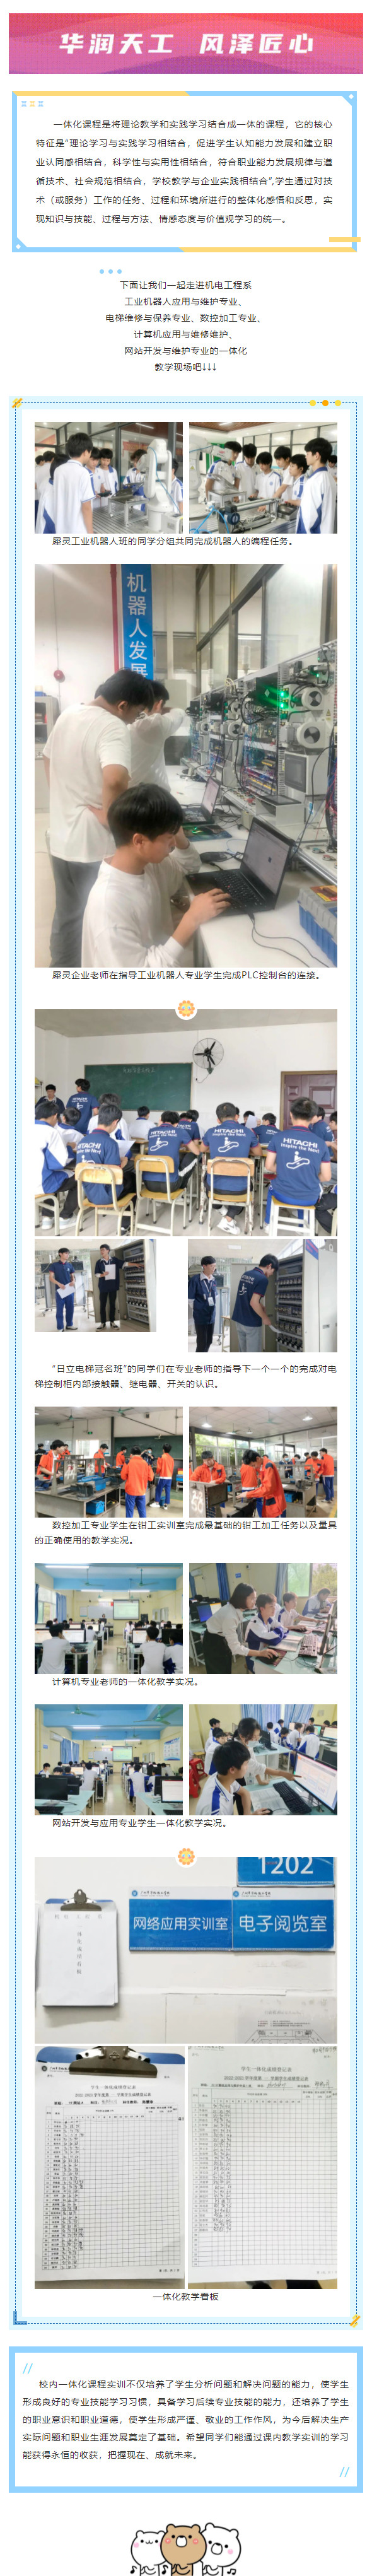 广州市华风技工学校机电工程系一体化课程教学实况